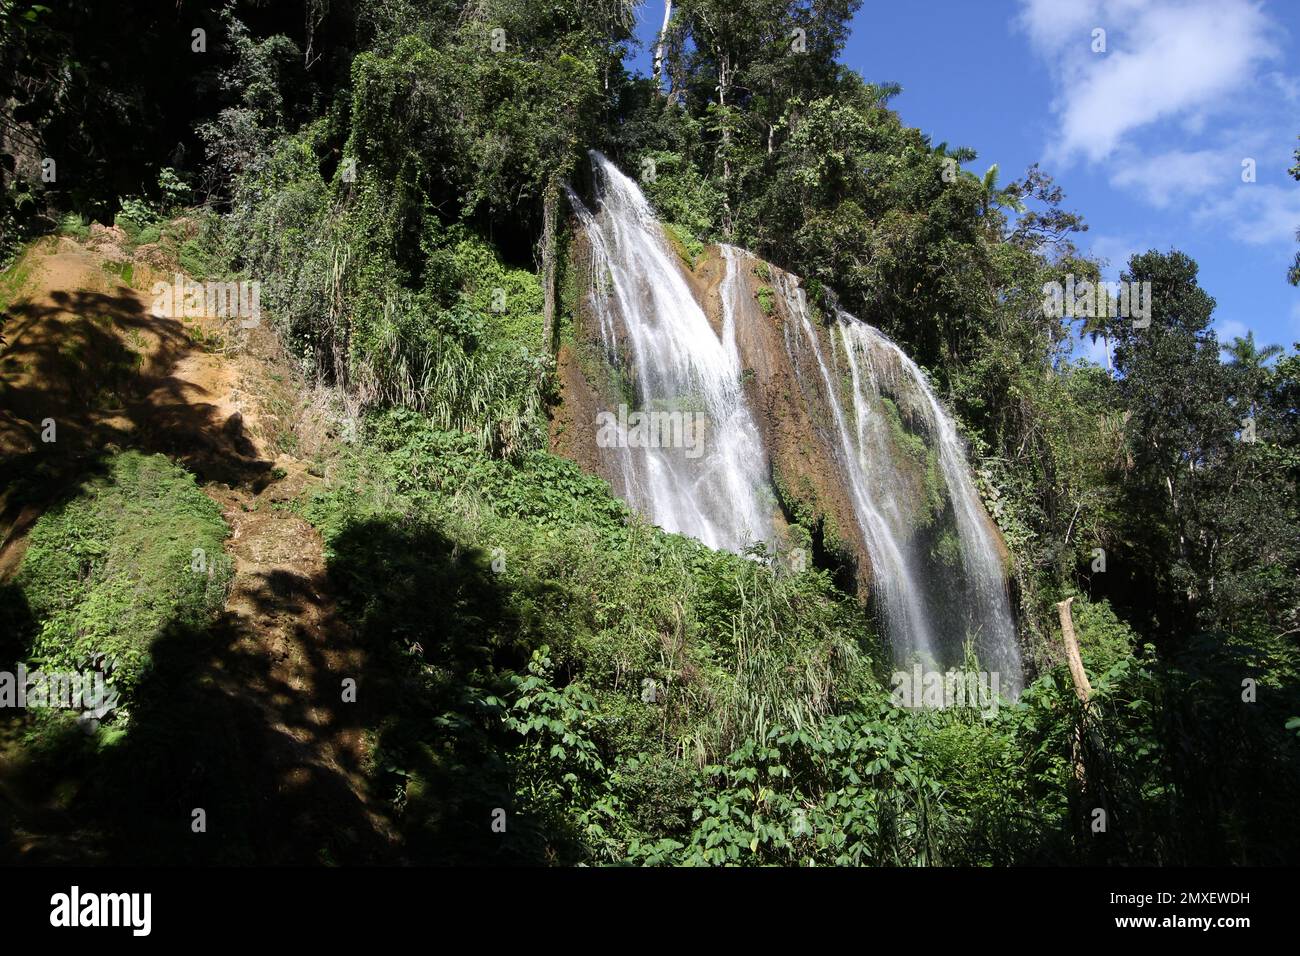 A beautiful waterfall in Parque Guanayara, Cuba Stock Photo